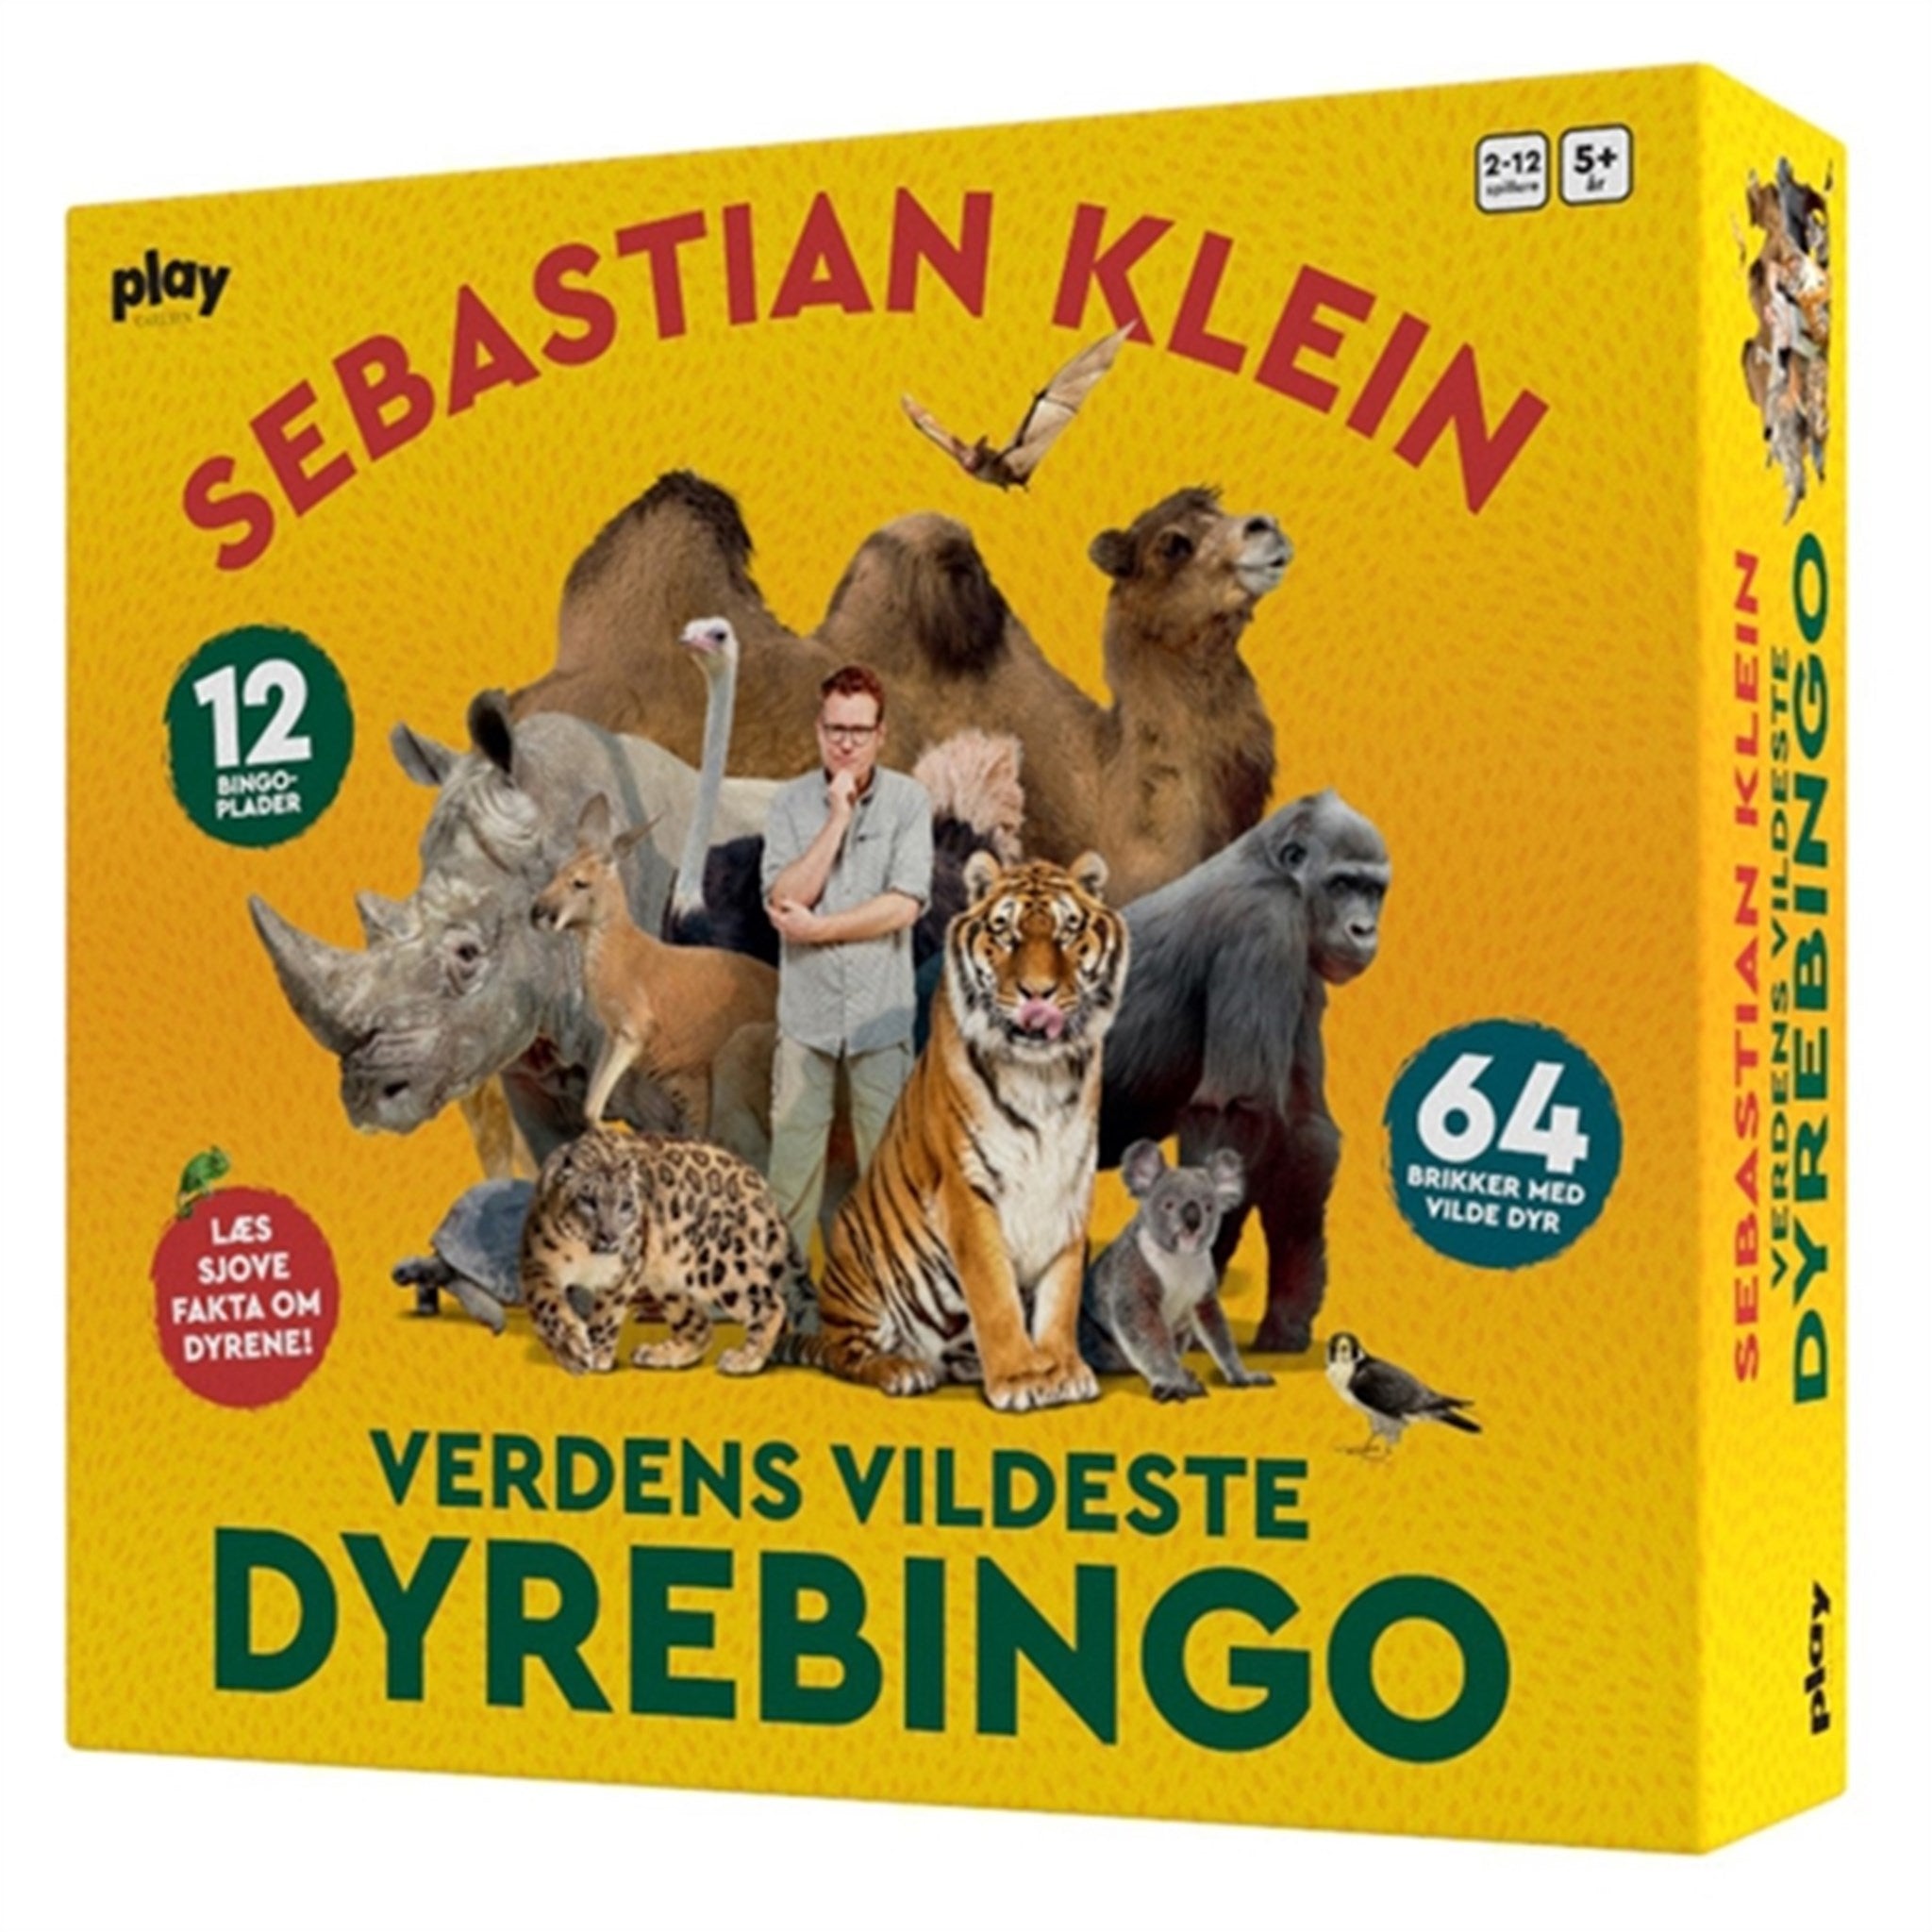 Forlaget Carlsen Sebastian Klein: Verdens Vildeste Dyrebingo